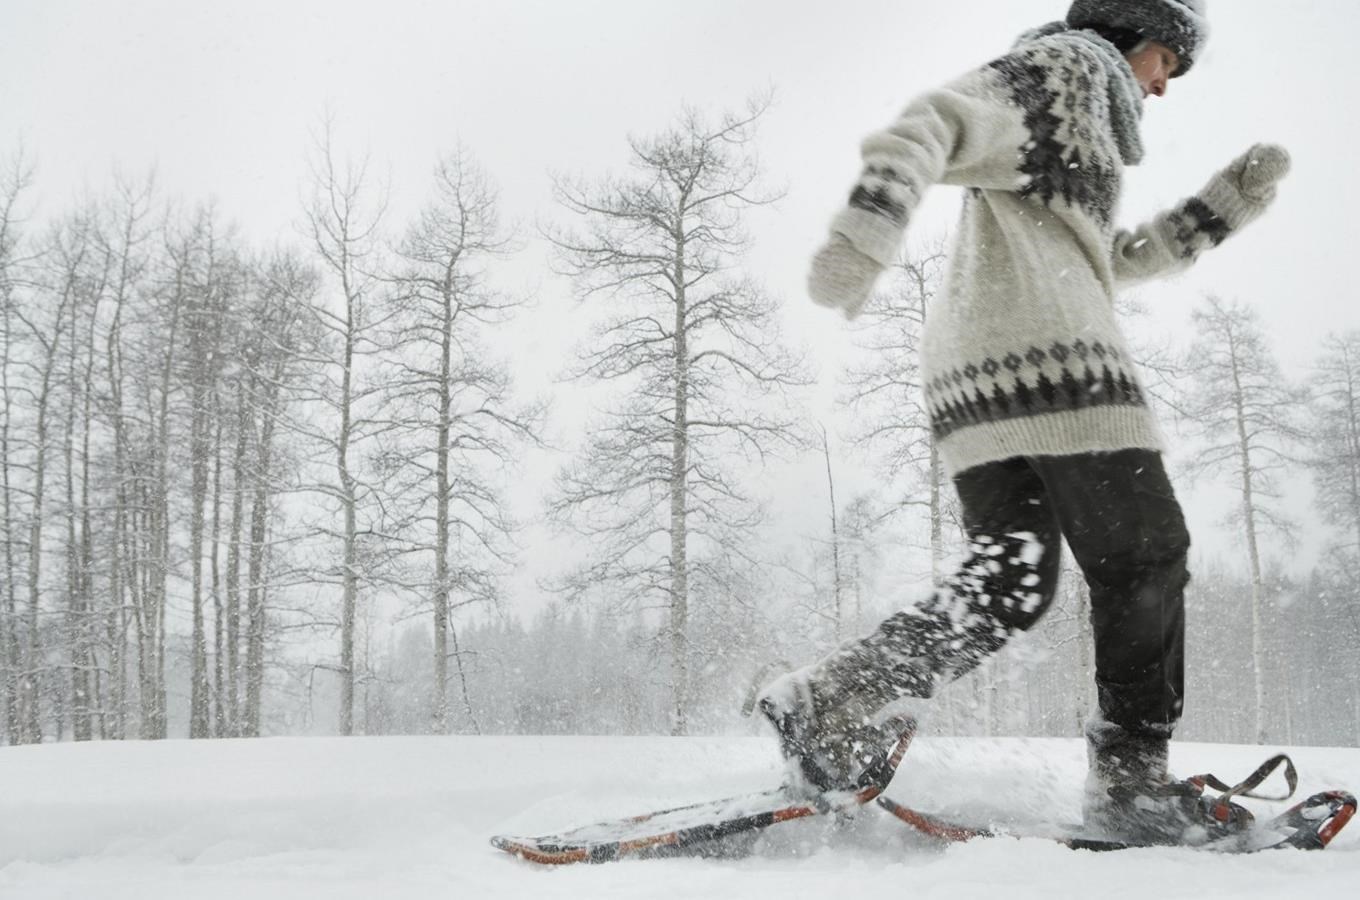 Snežnice se staly docela populární záležitostí pro ty, kterí nechtejí jezdit na lyžích, ale rádi by se prošli po loukách, kde je hodne snehu